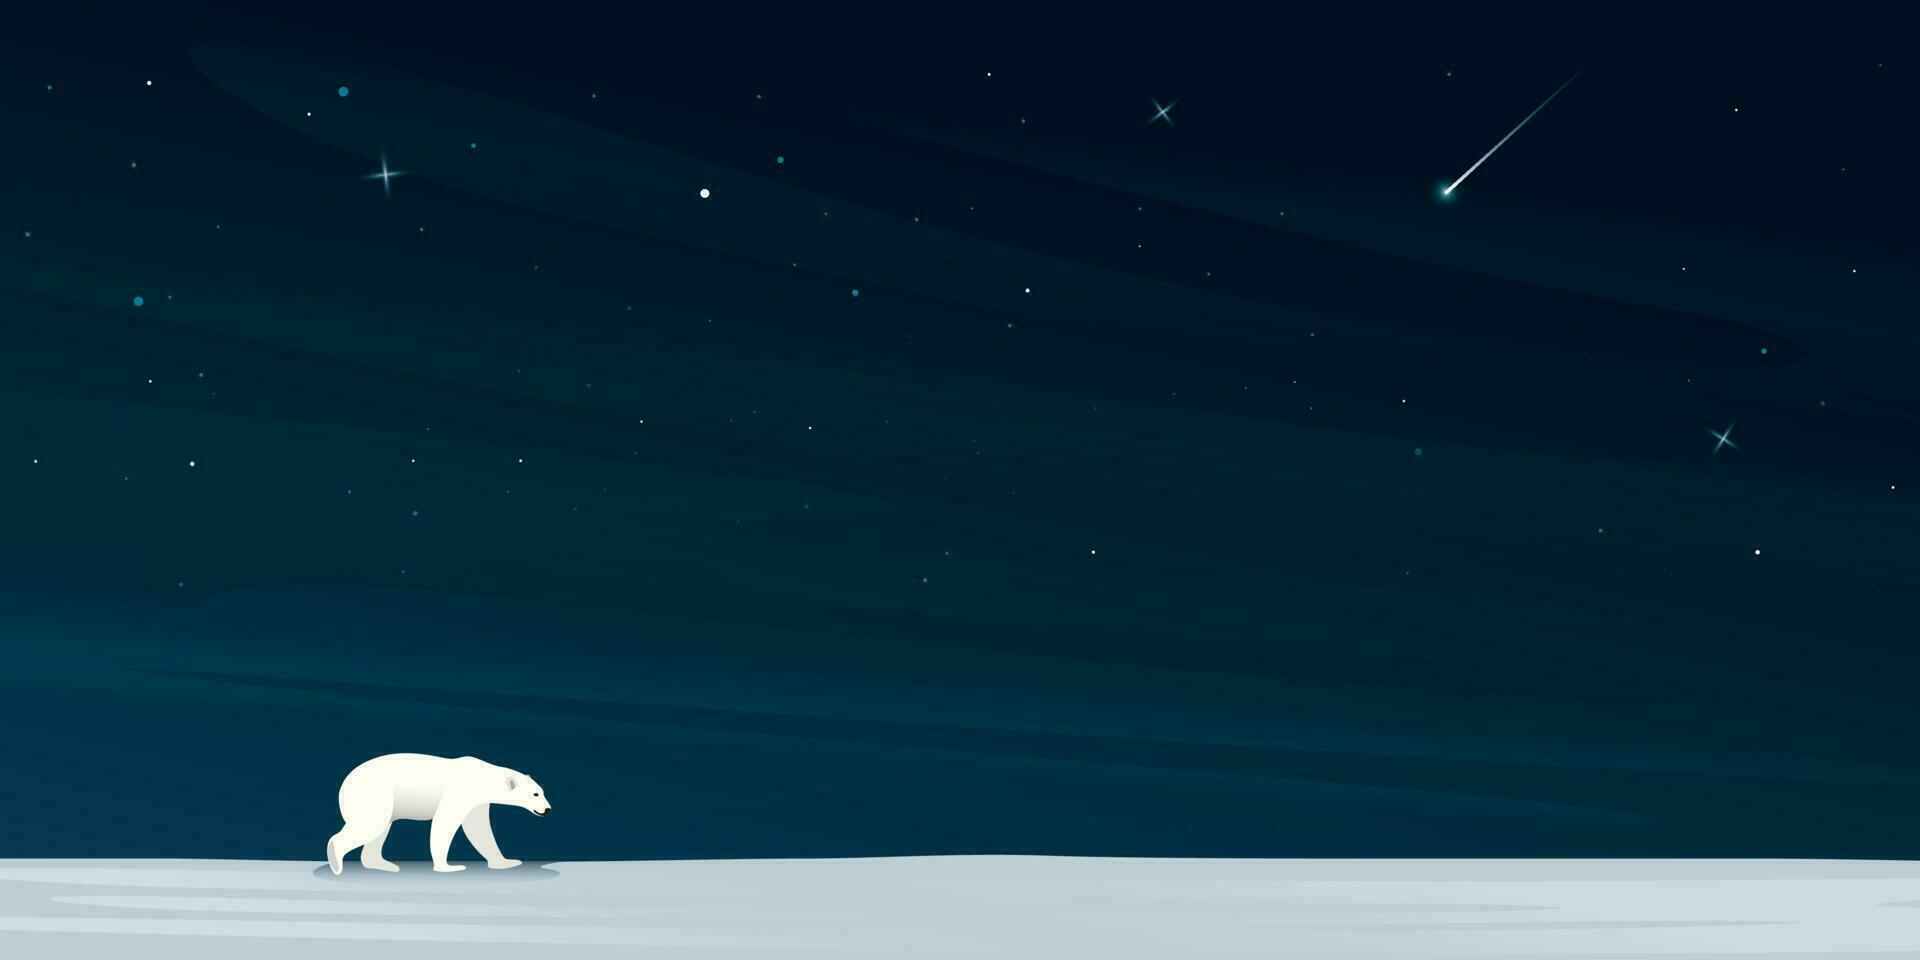 natt på norr Pol ha polär Björn gående ensam på is med en massa av stjärnor på de himmel bakgrund. snö landskap begrepp vektor illustration med tom Plats.